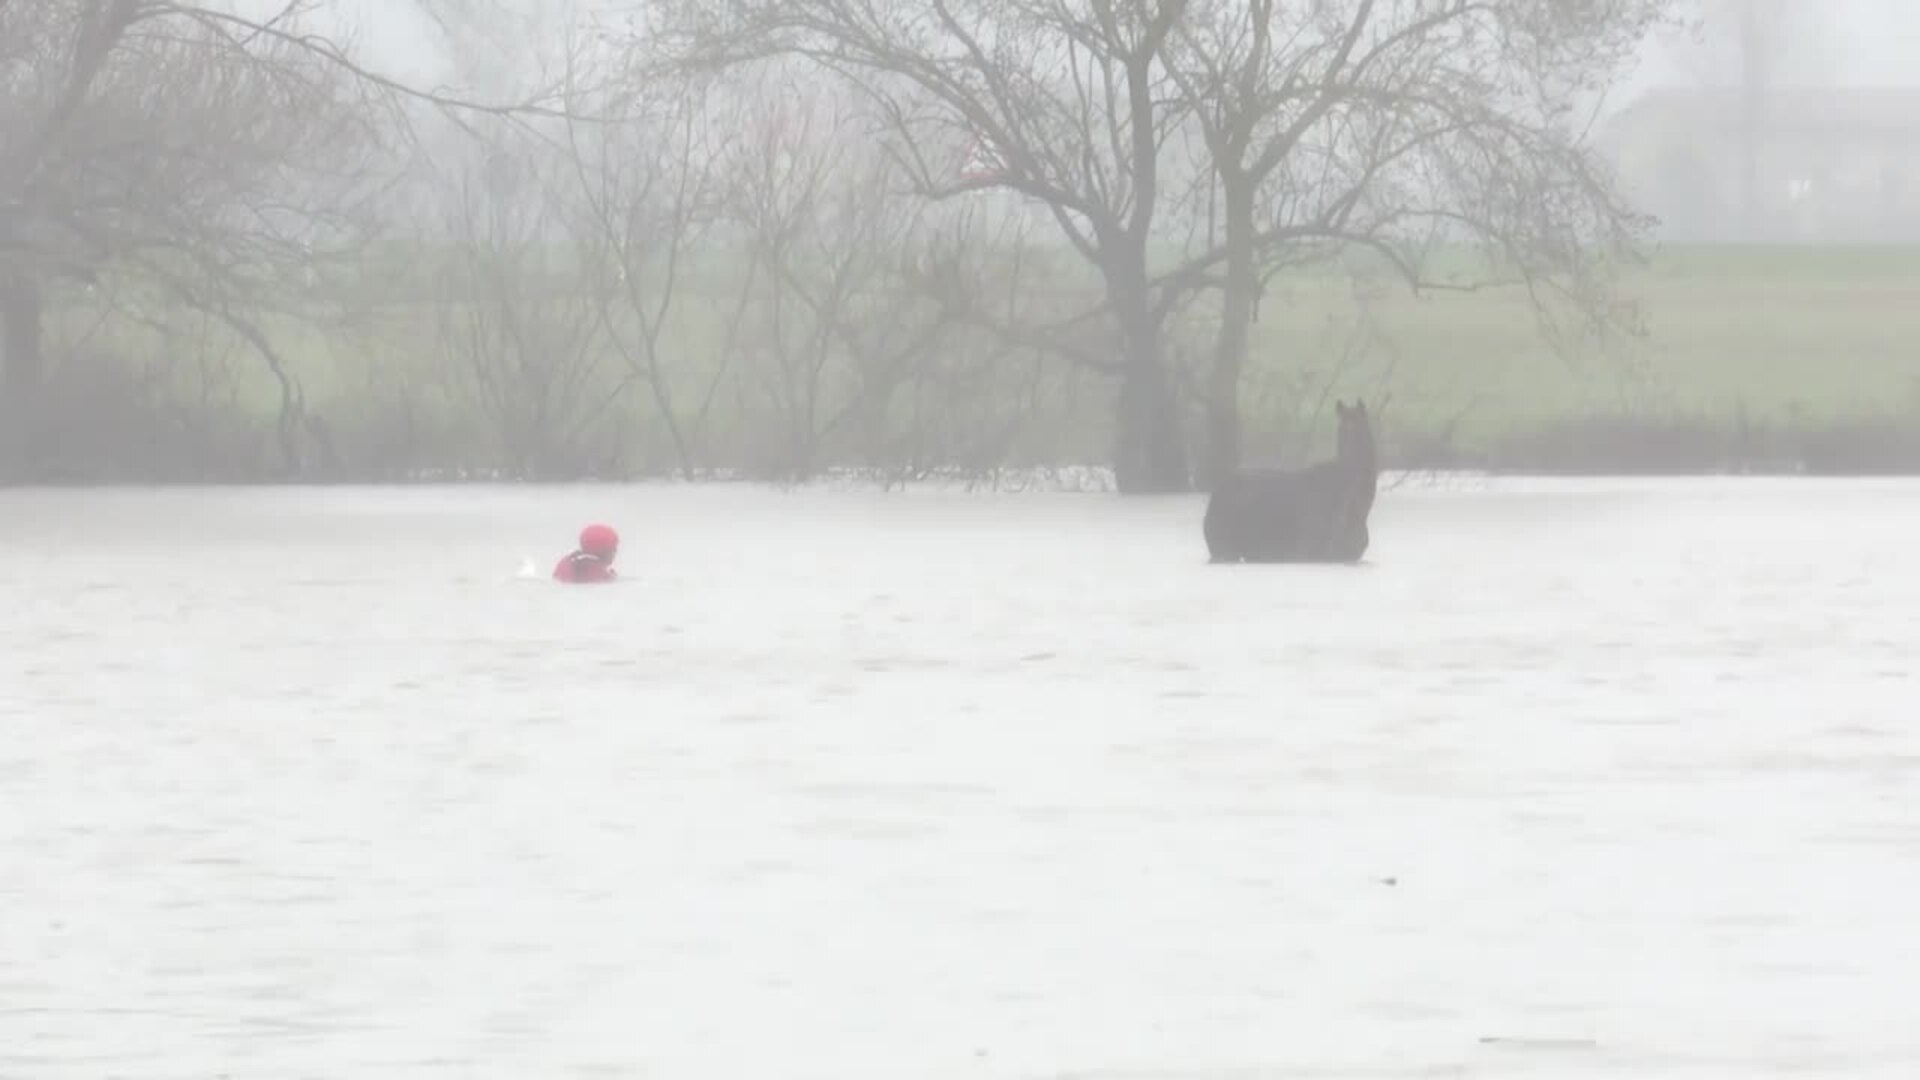 Rescatan un caballo atrapado por el desbordamiento de un río en Vitoria